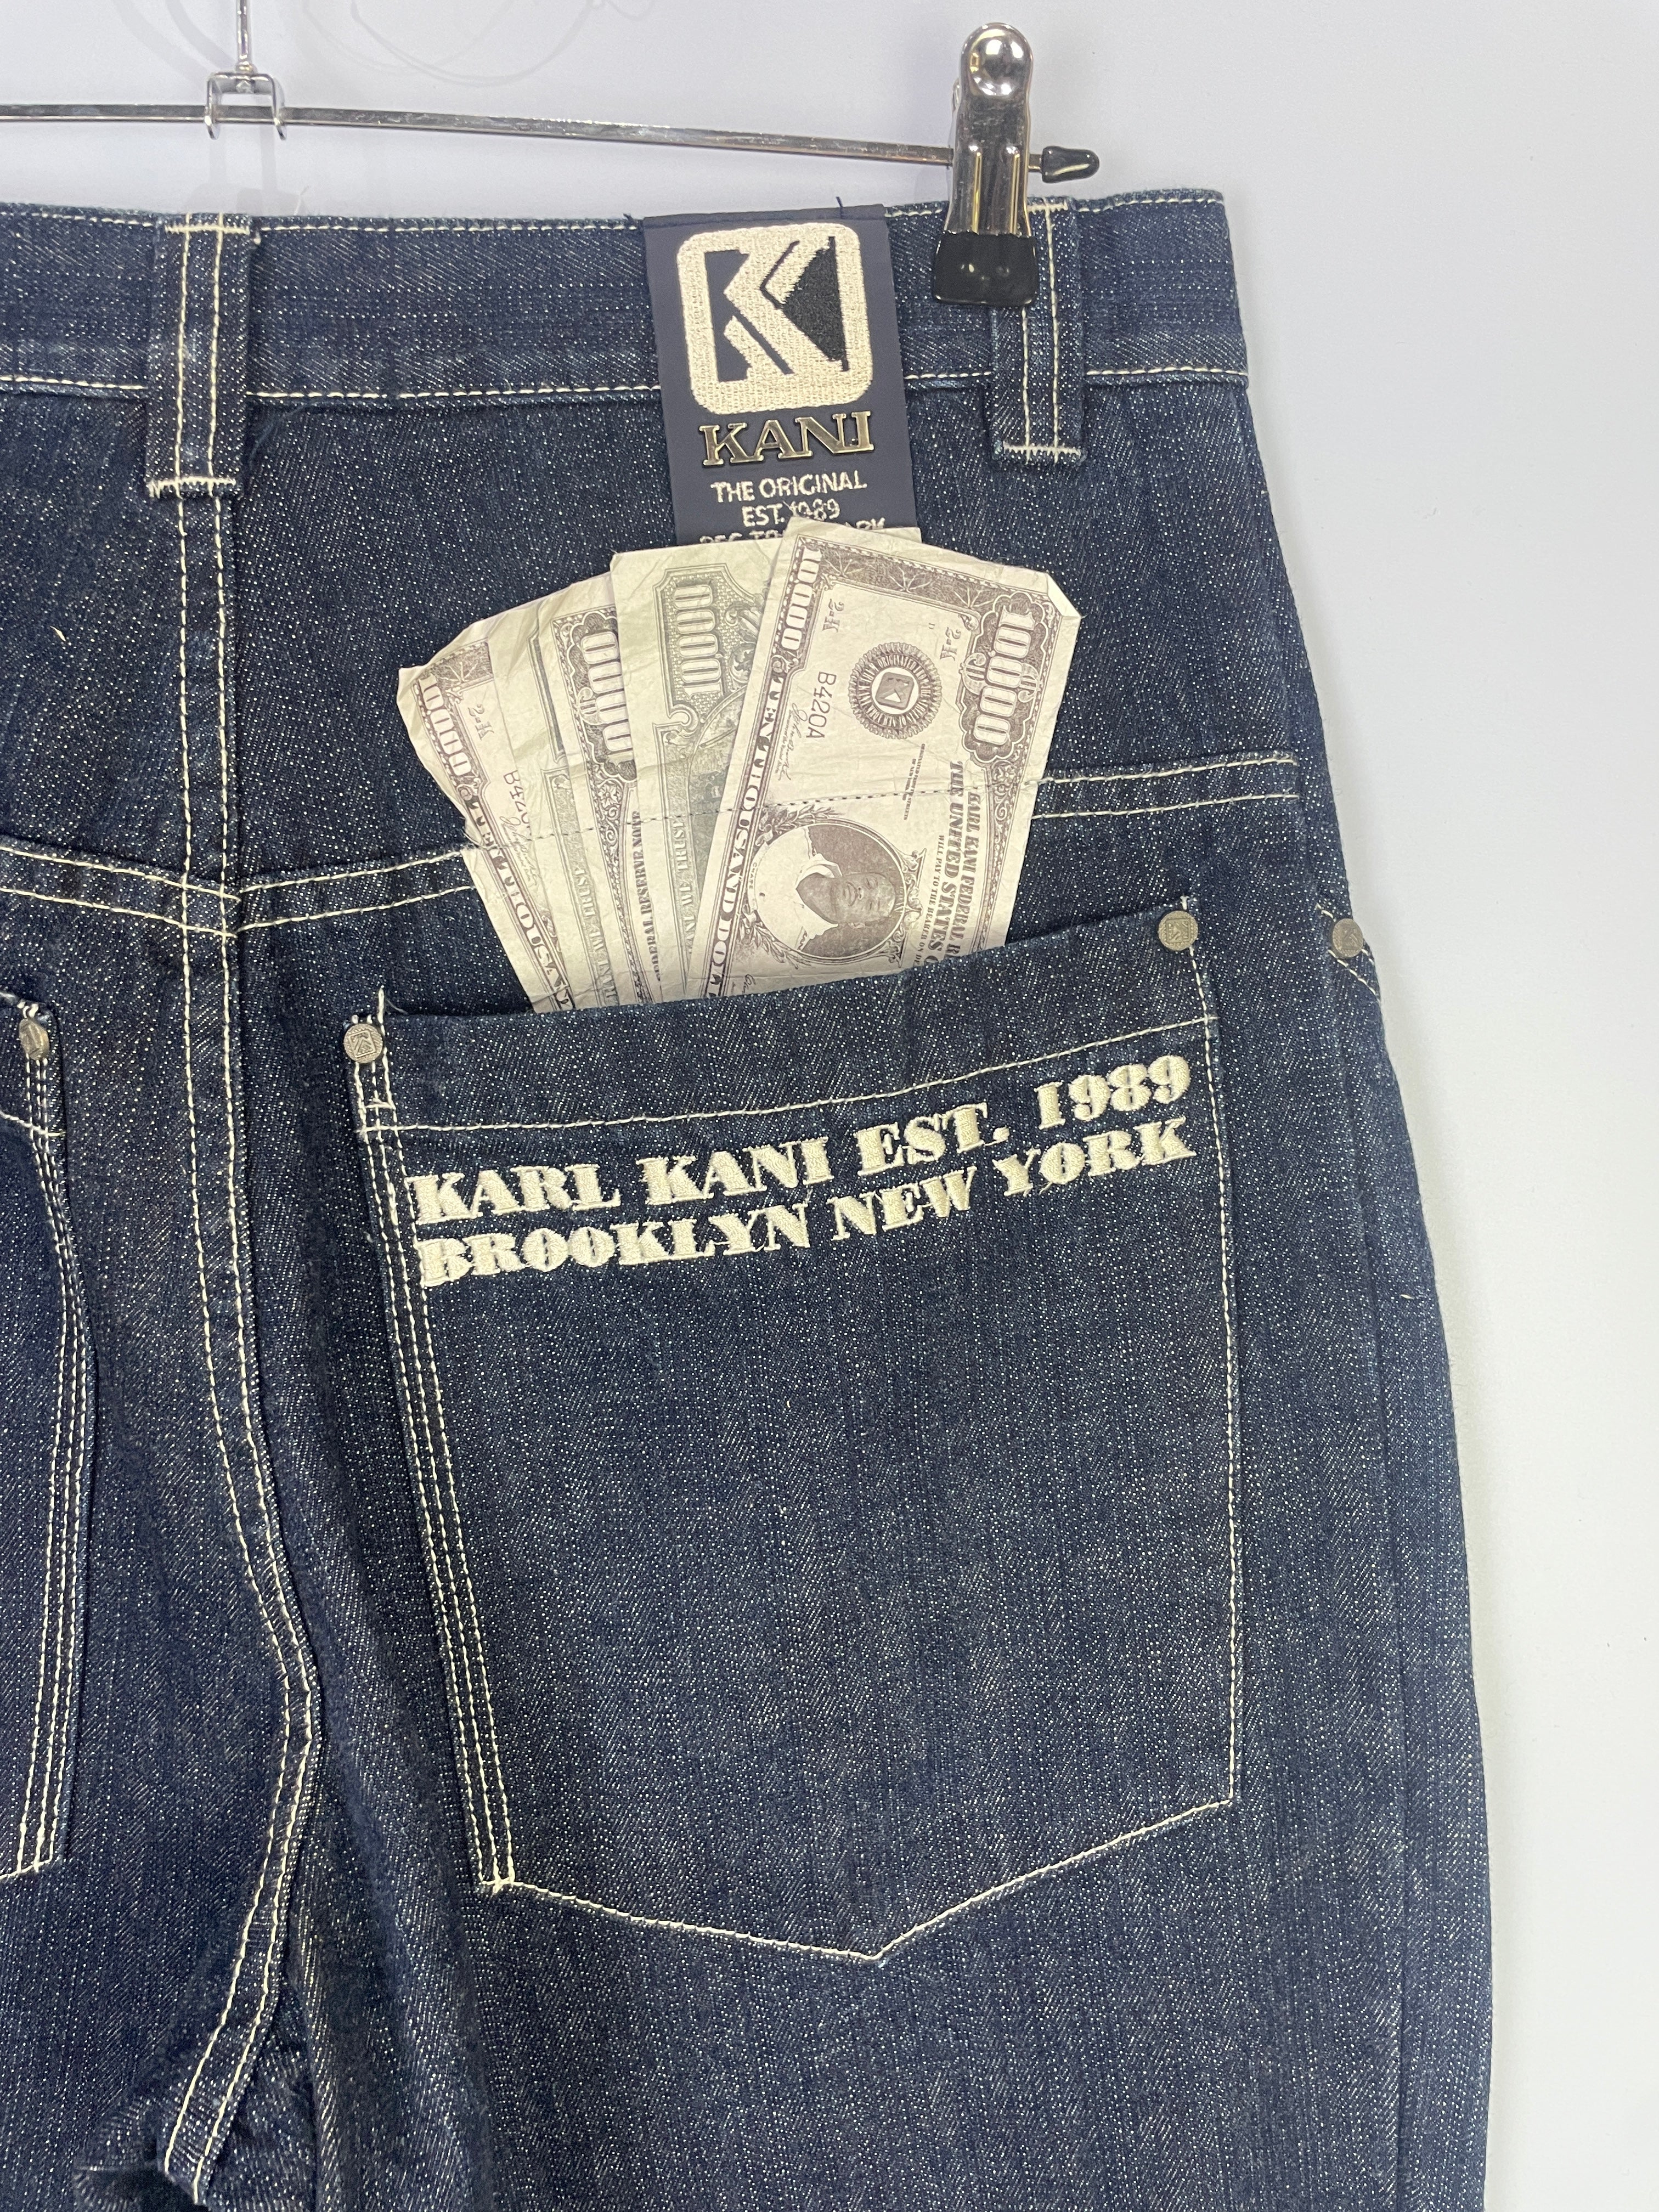 Karl Kani  baggy Jeans 30 mit Dollar Scheinen in sehr gutem Zustand